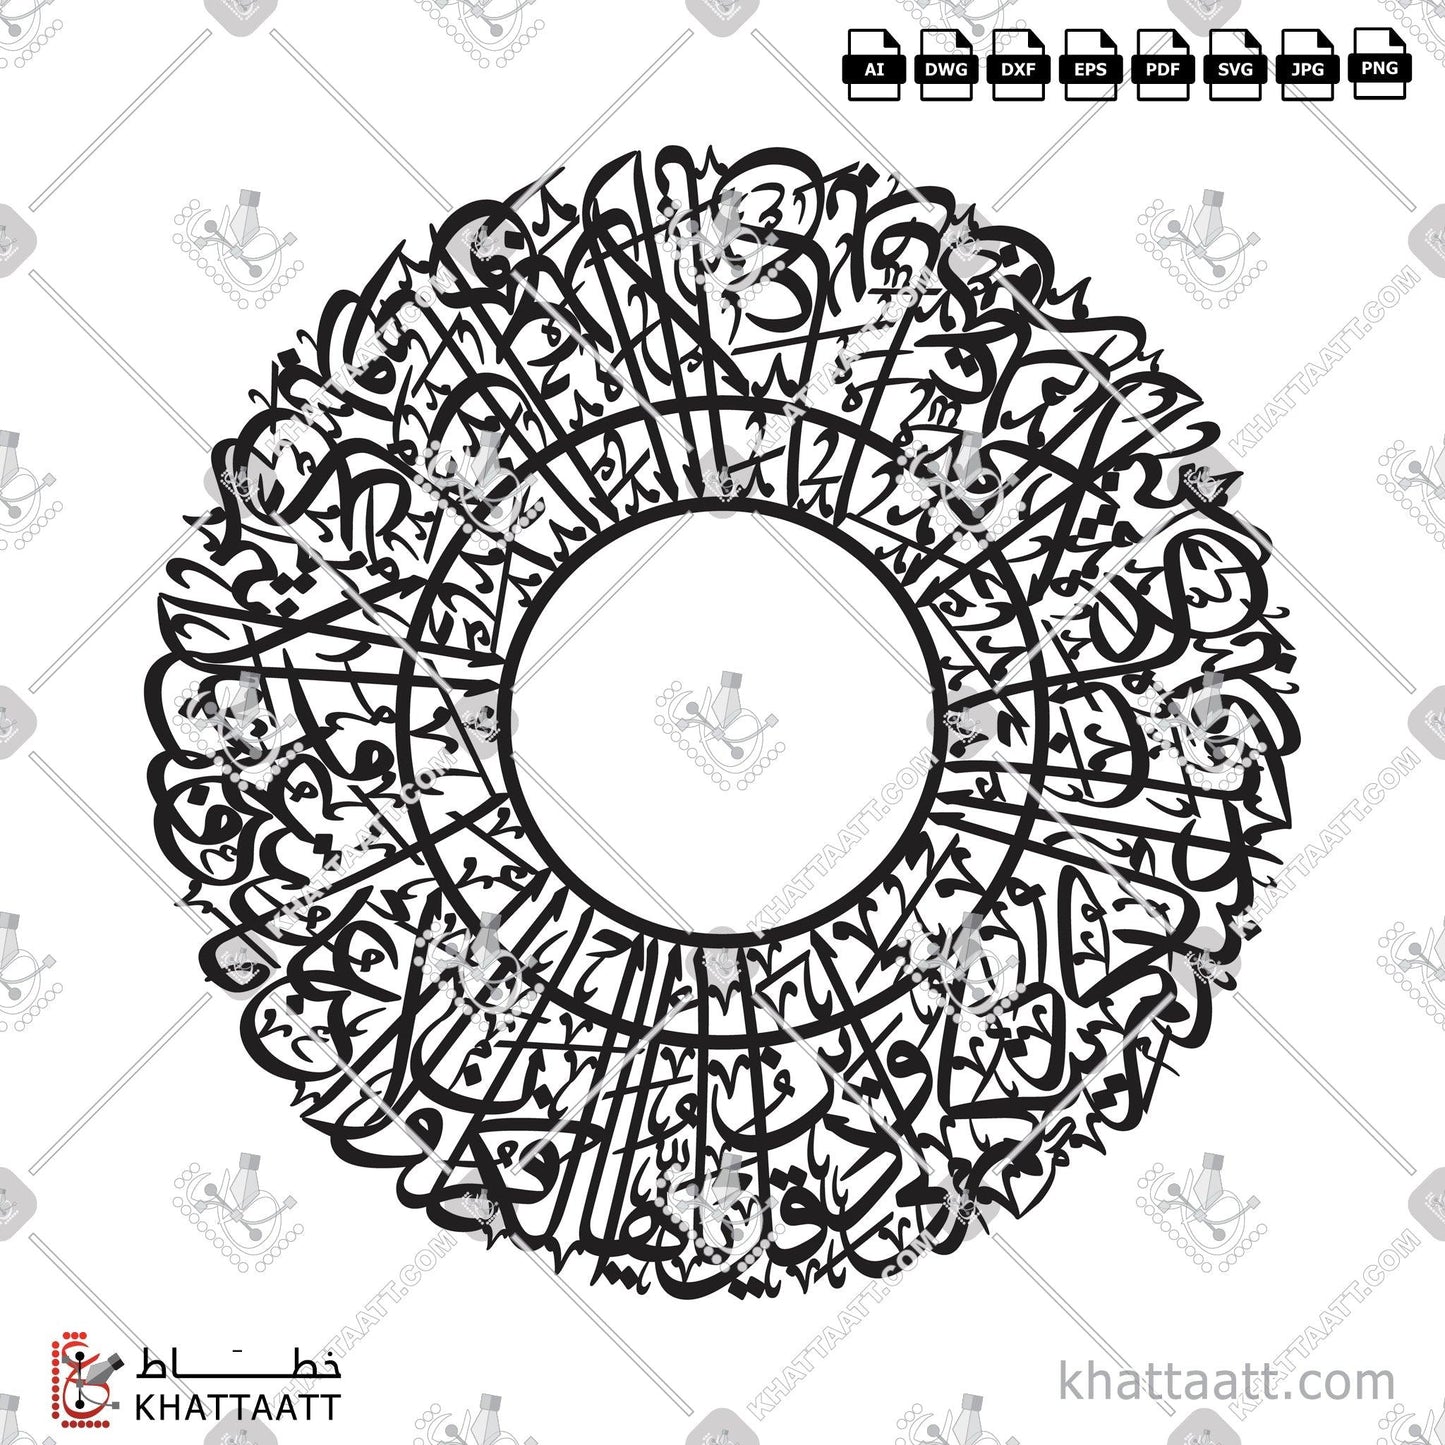 Digital Arabic Calligraphy Vector of Surat Al-Kafirun - سورة الكافرون in Thuluth - خط الثلث